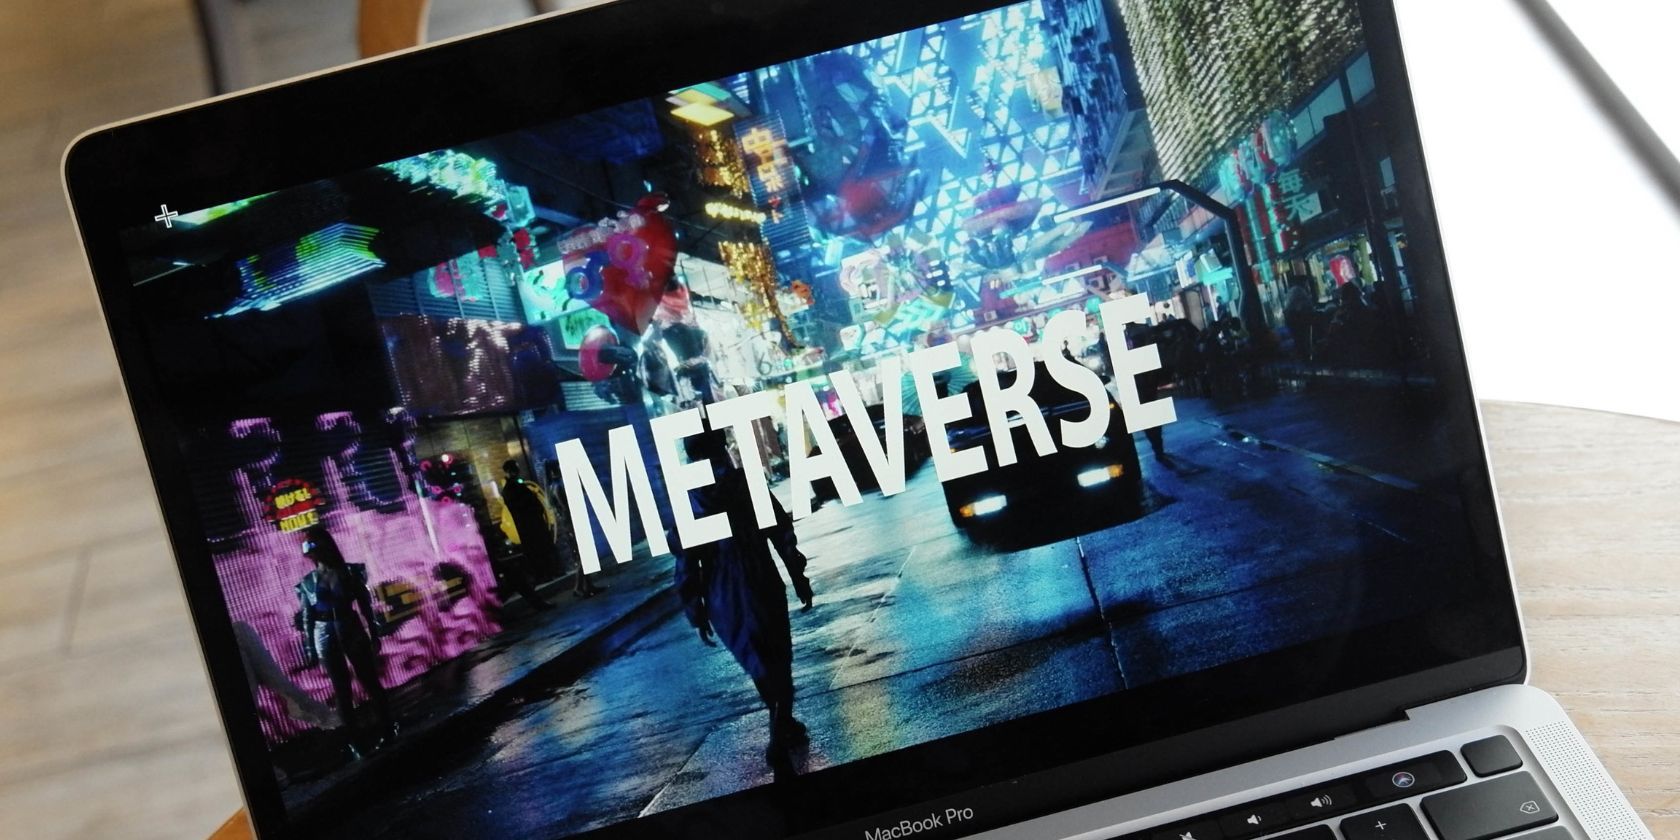 digital metaverse graphic on laptop screen